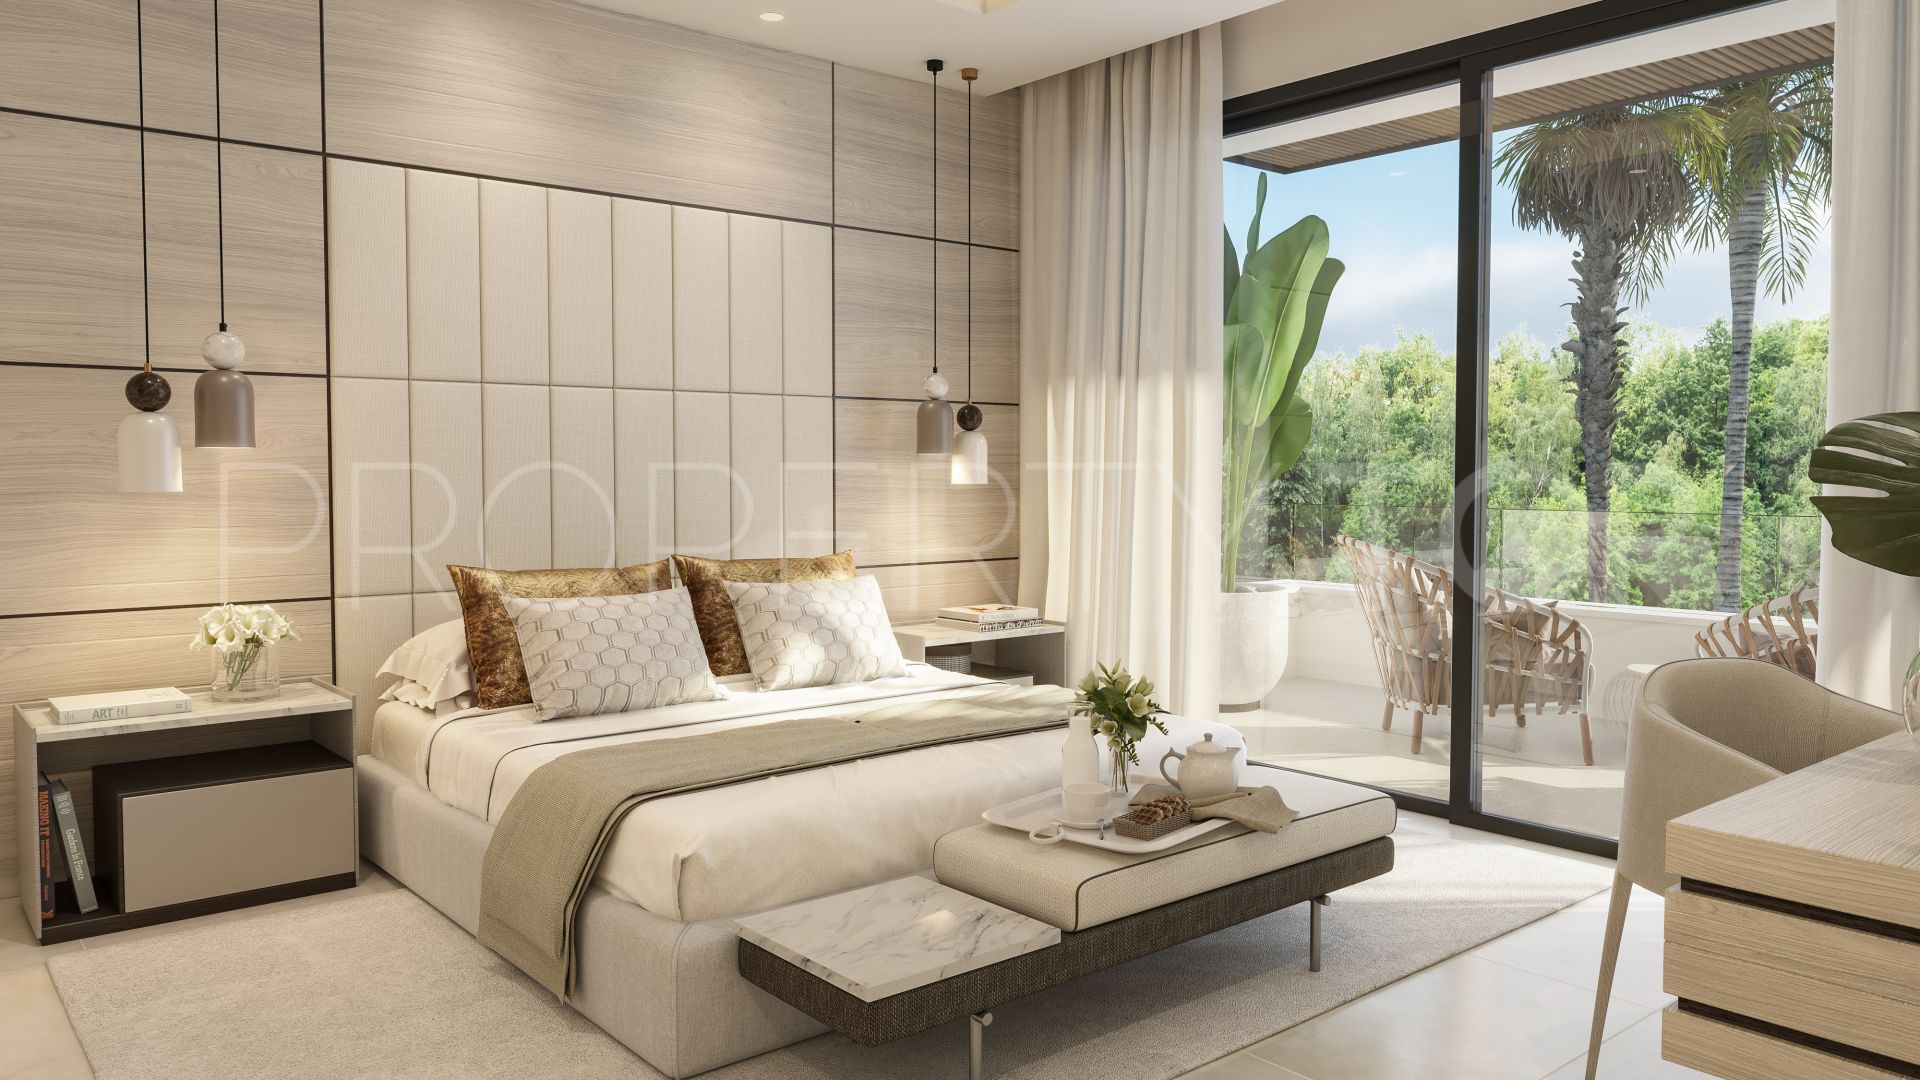 For sale 3 bedrooms villa in Riviera del Sol